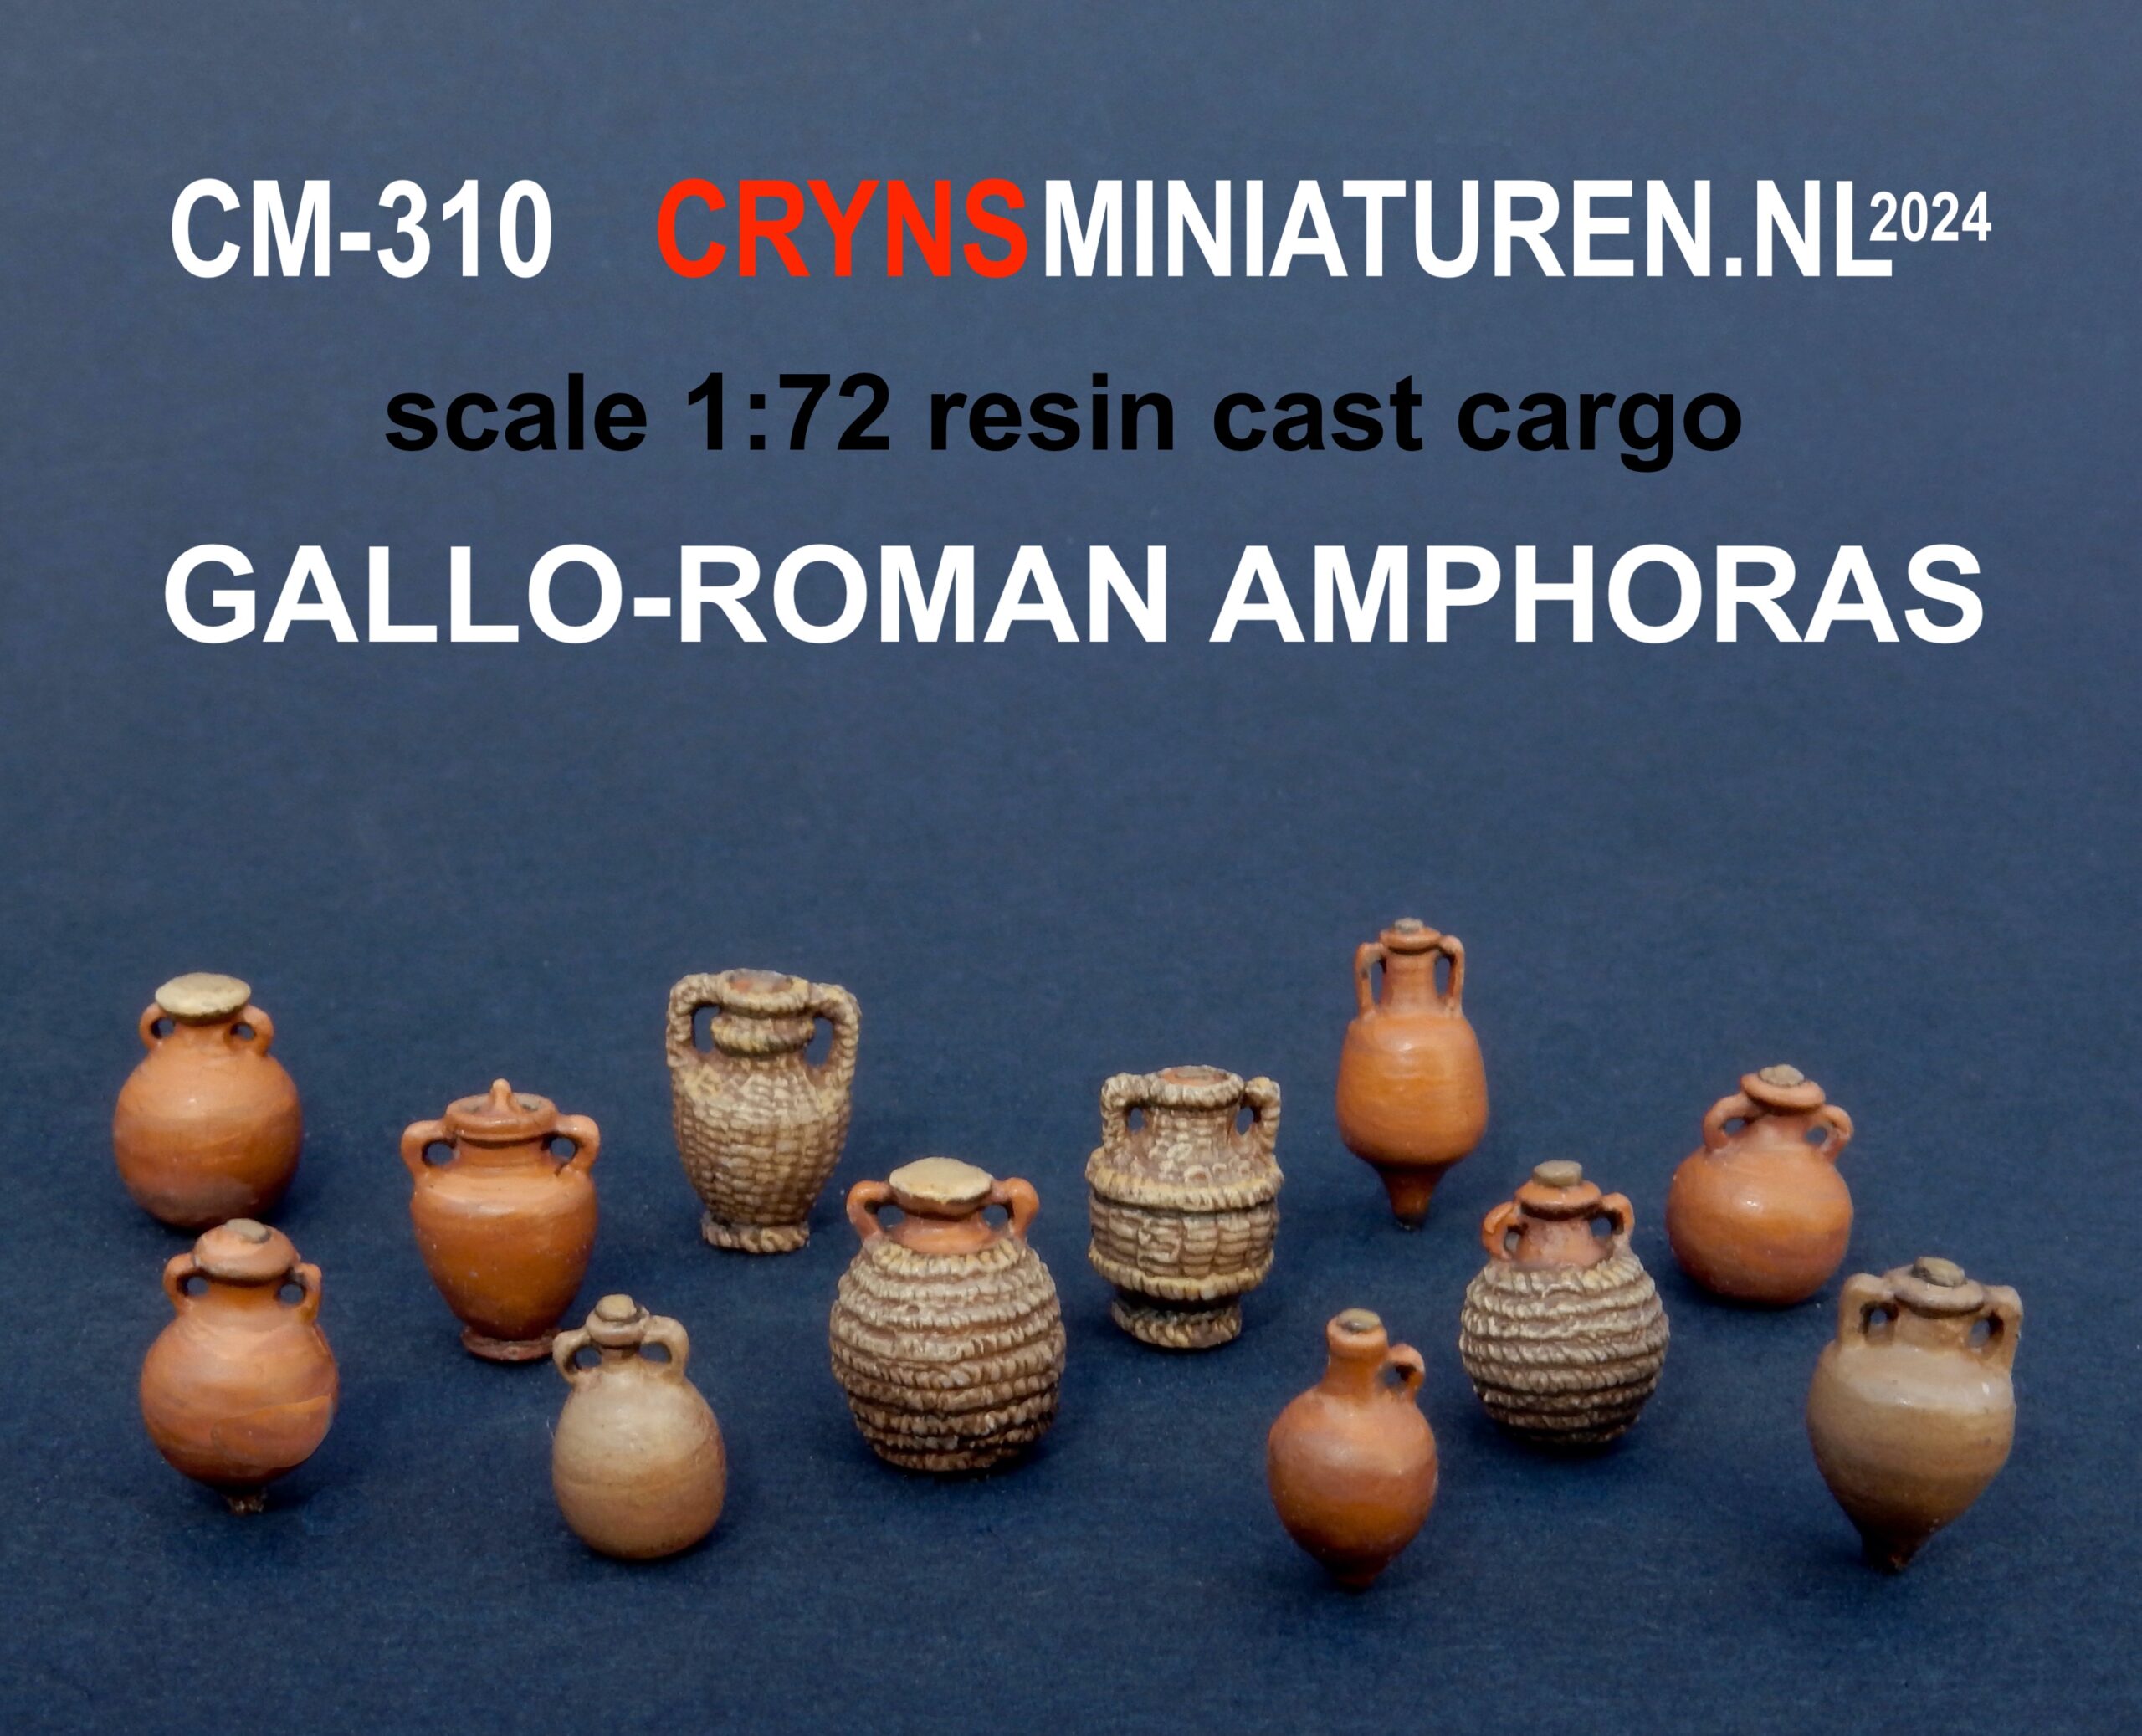 12 Roman amphoras scale 1:72